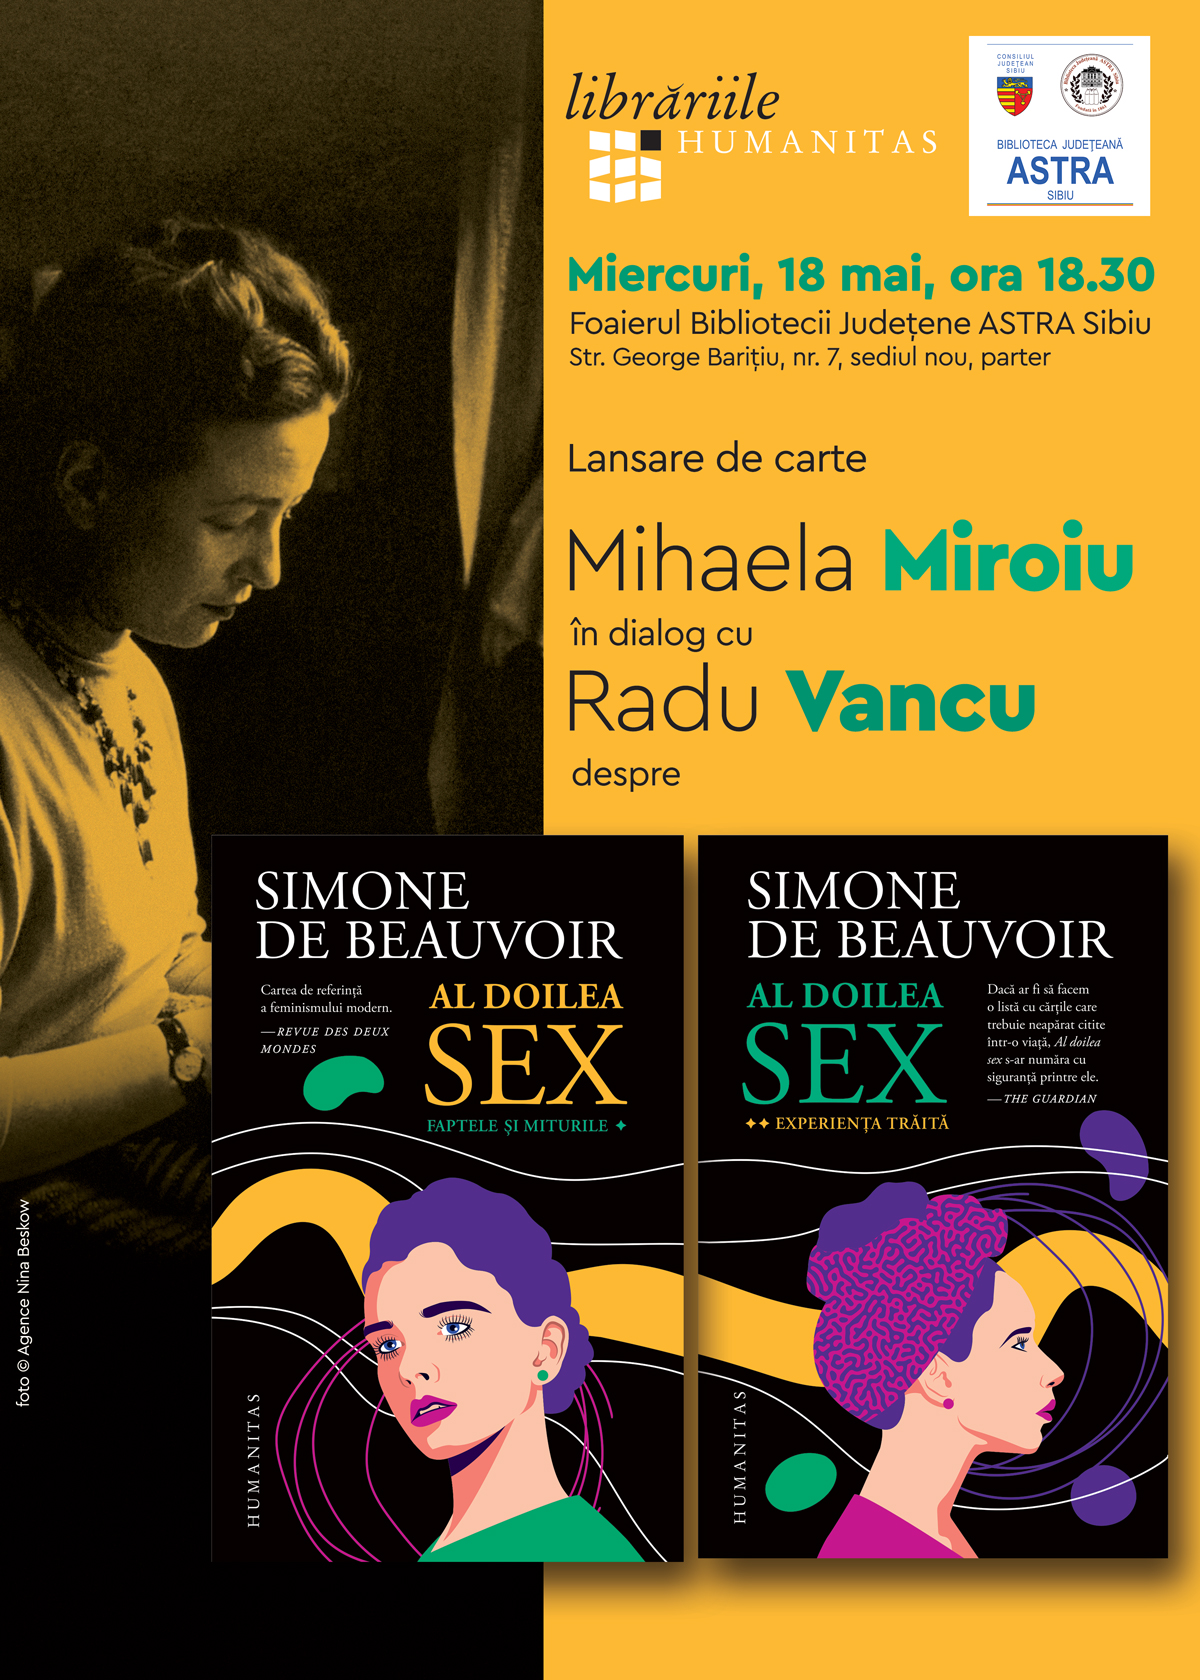 Lansarea Unei Noi Ediții A Cărții „al Doilea Sex” De Simone De Beauvoir La Biblioteca Astra 3811